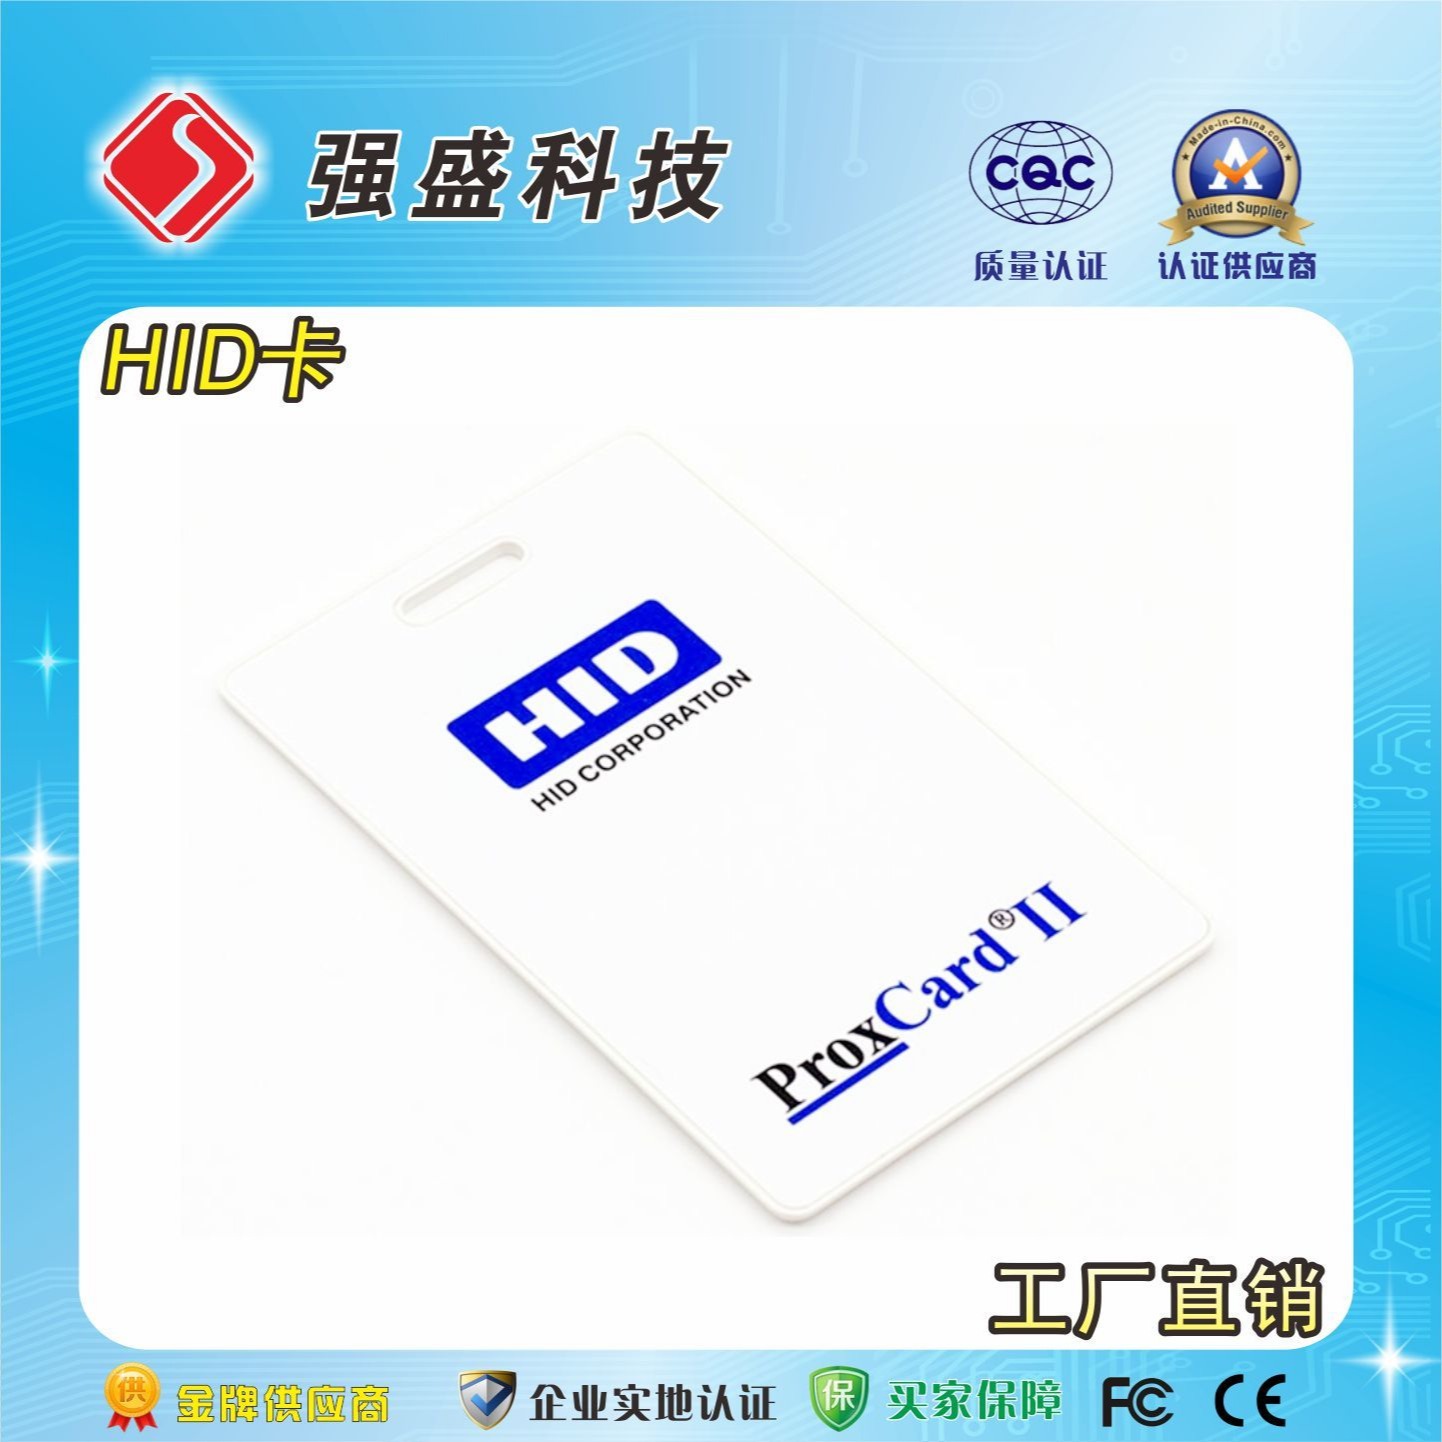 广州定制HID卡 原装HID厚卡 13.56MHz HID智能卡